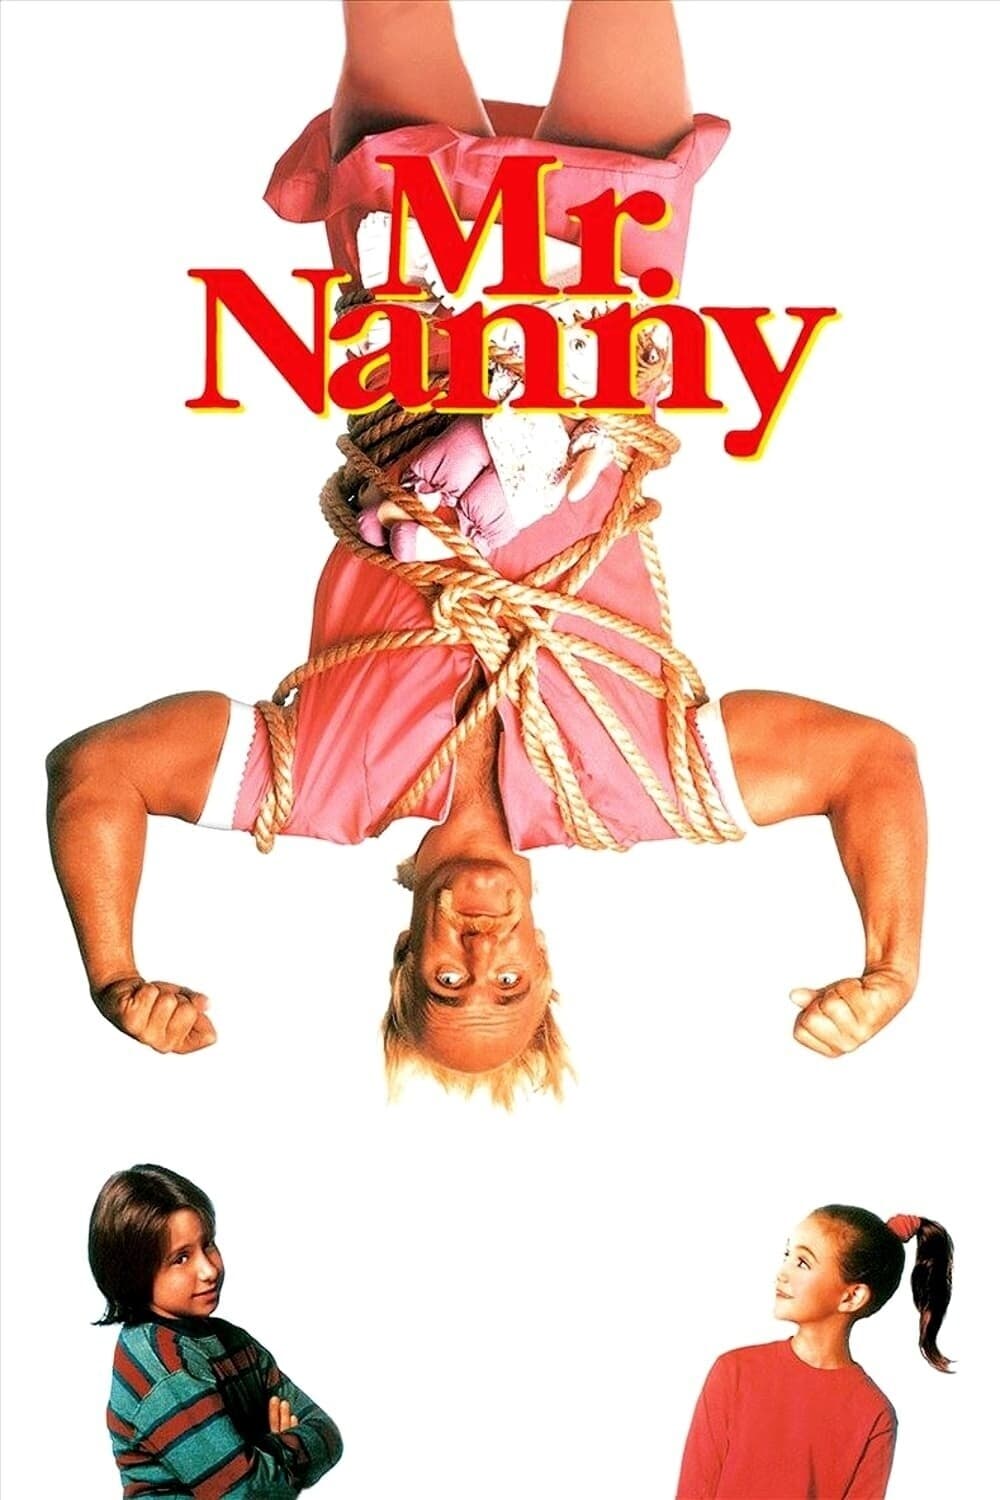 دانلود صوت دوبله فیلم Mr. Nanny